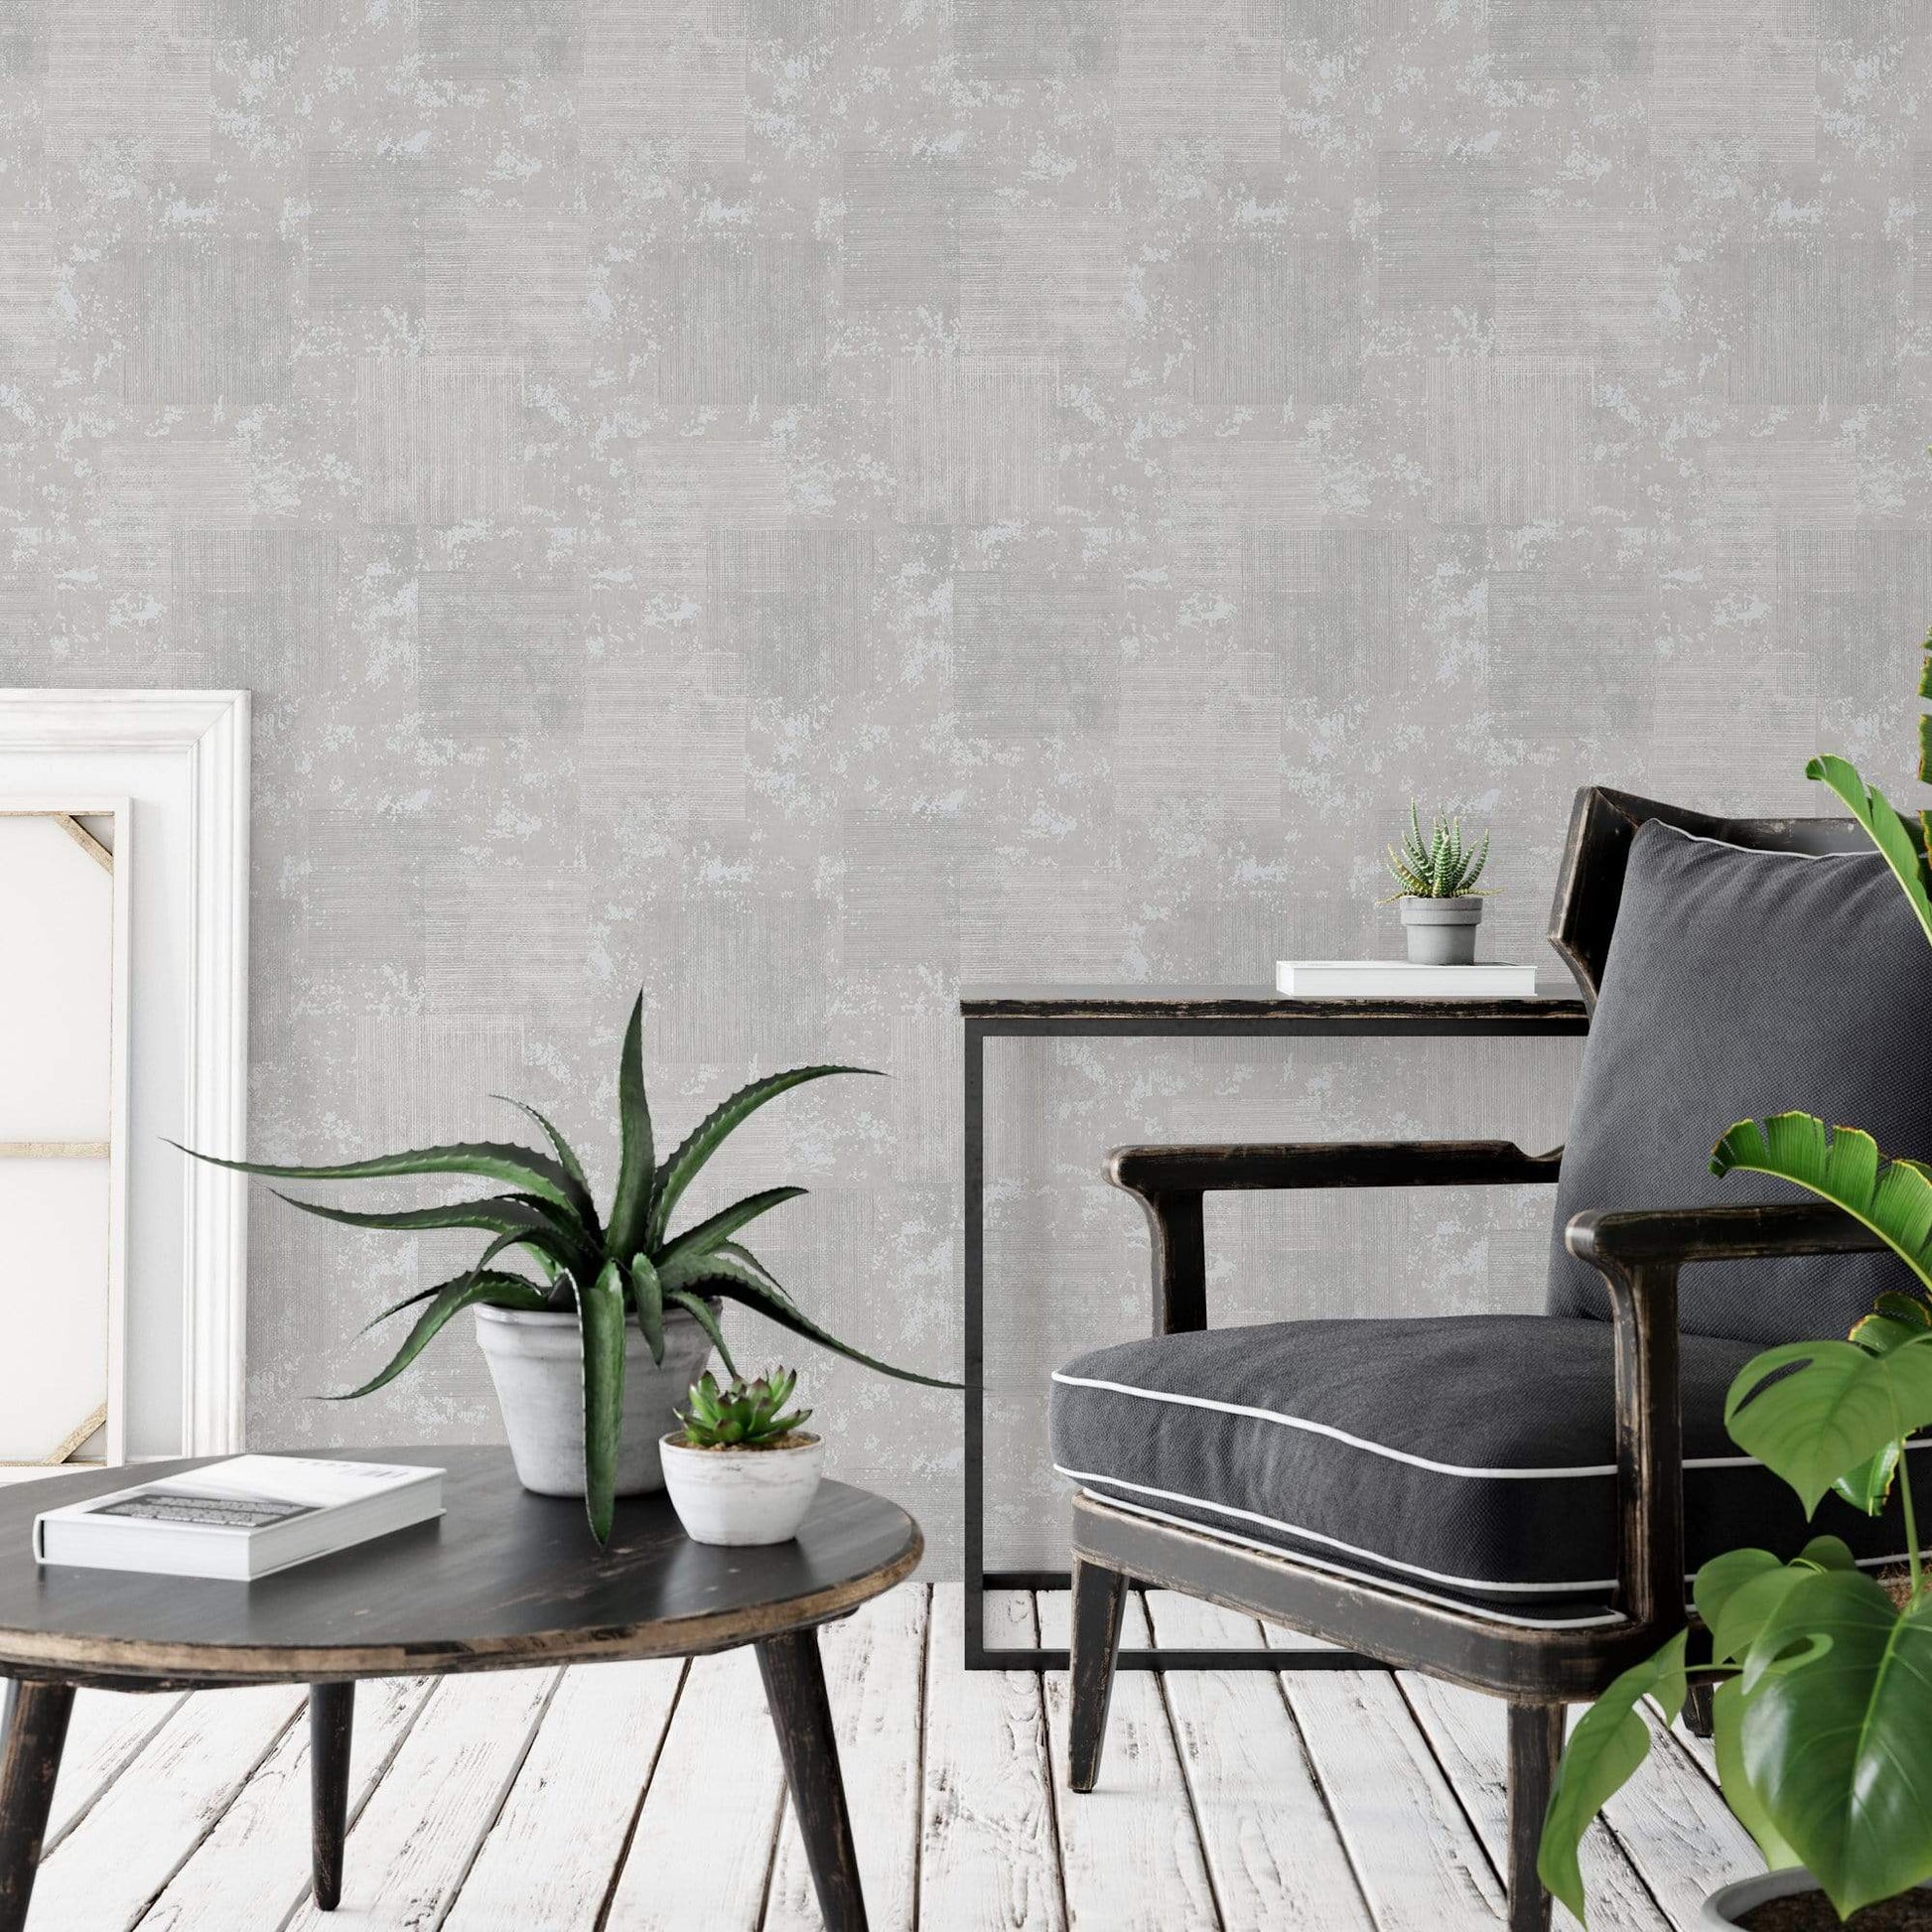 Wallpaper  -  Graham & Brown Armature Texture Grey Wallpaper - 113254  -  50156293